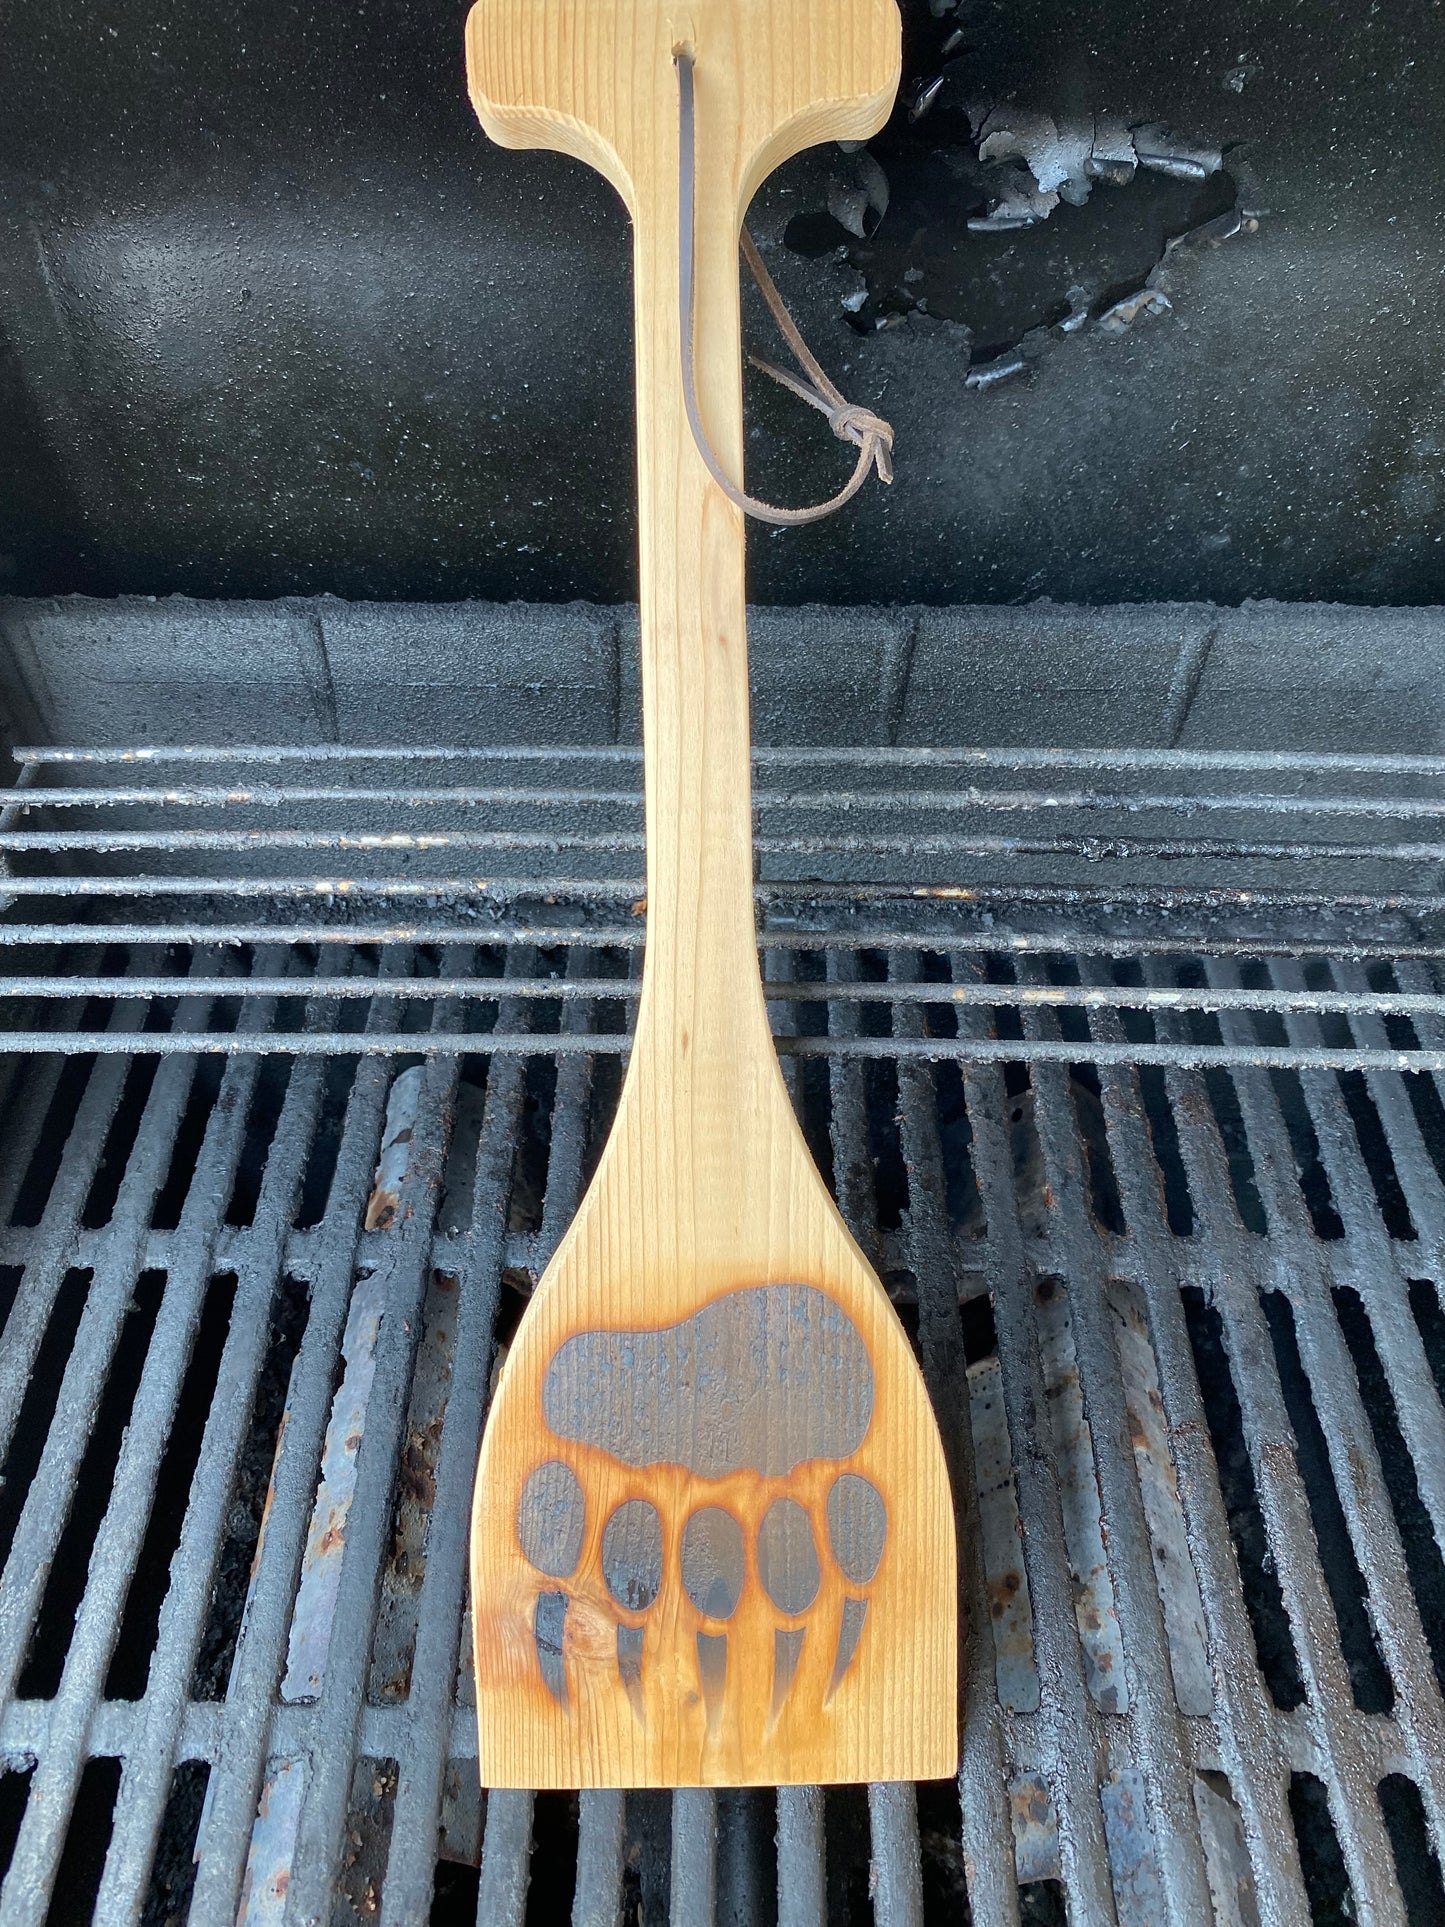 Bear Claw Cedar Grill Scraper – DFM Tool Works